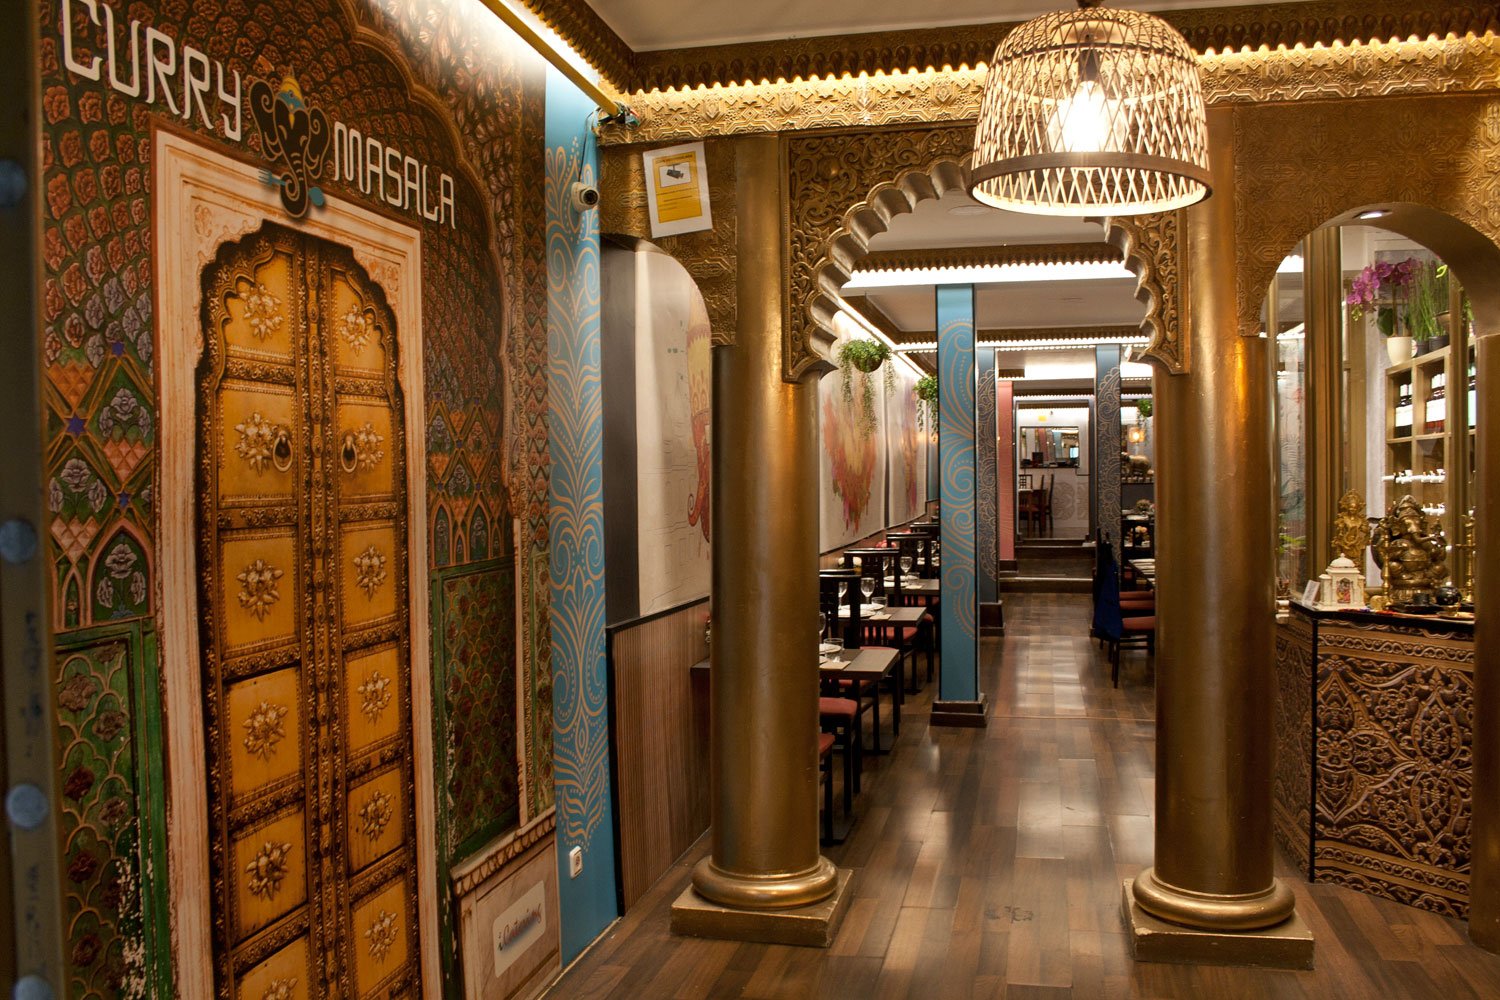 El restaurante de comida india en Madrid que te sorprenderá: “100% recomendable”